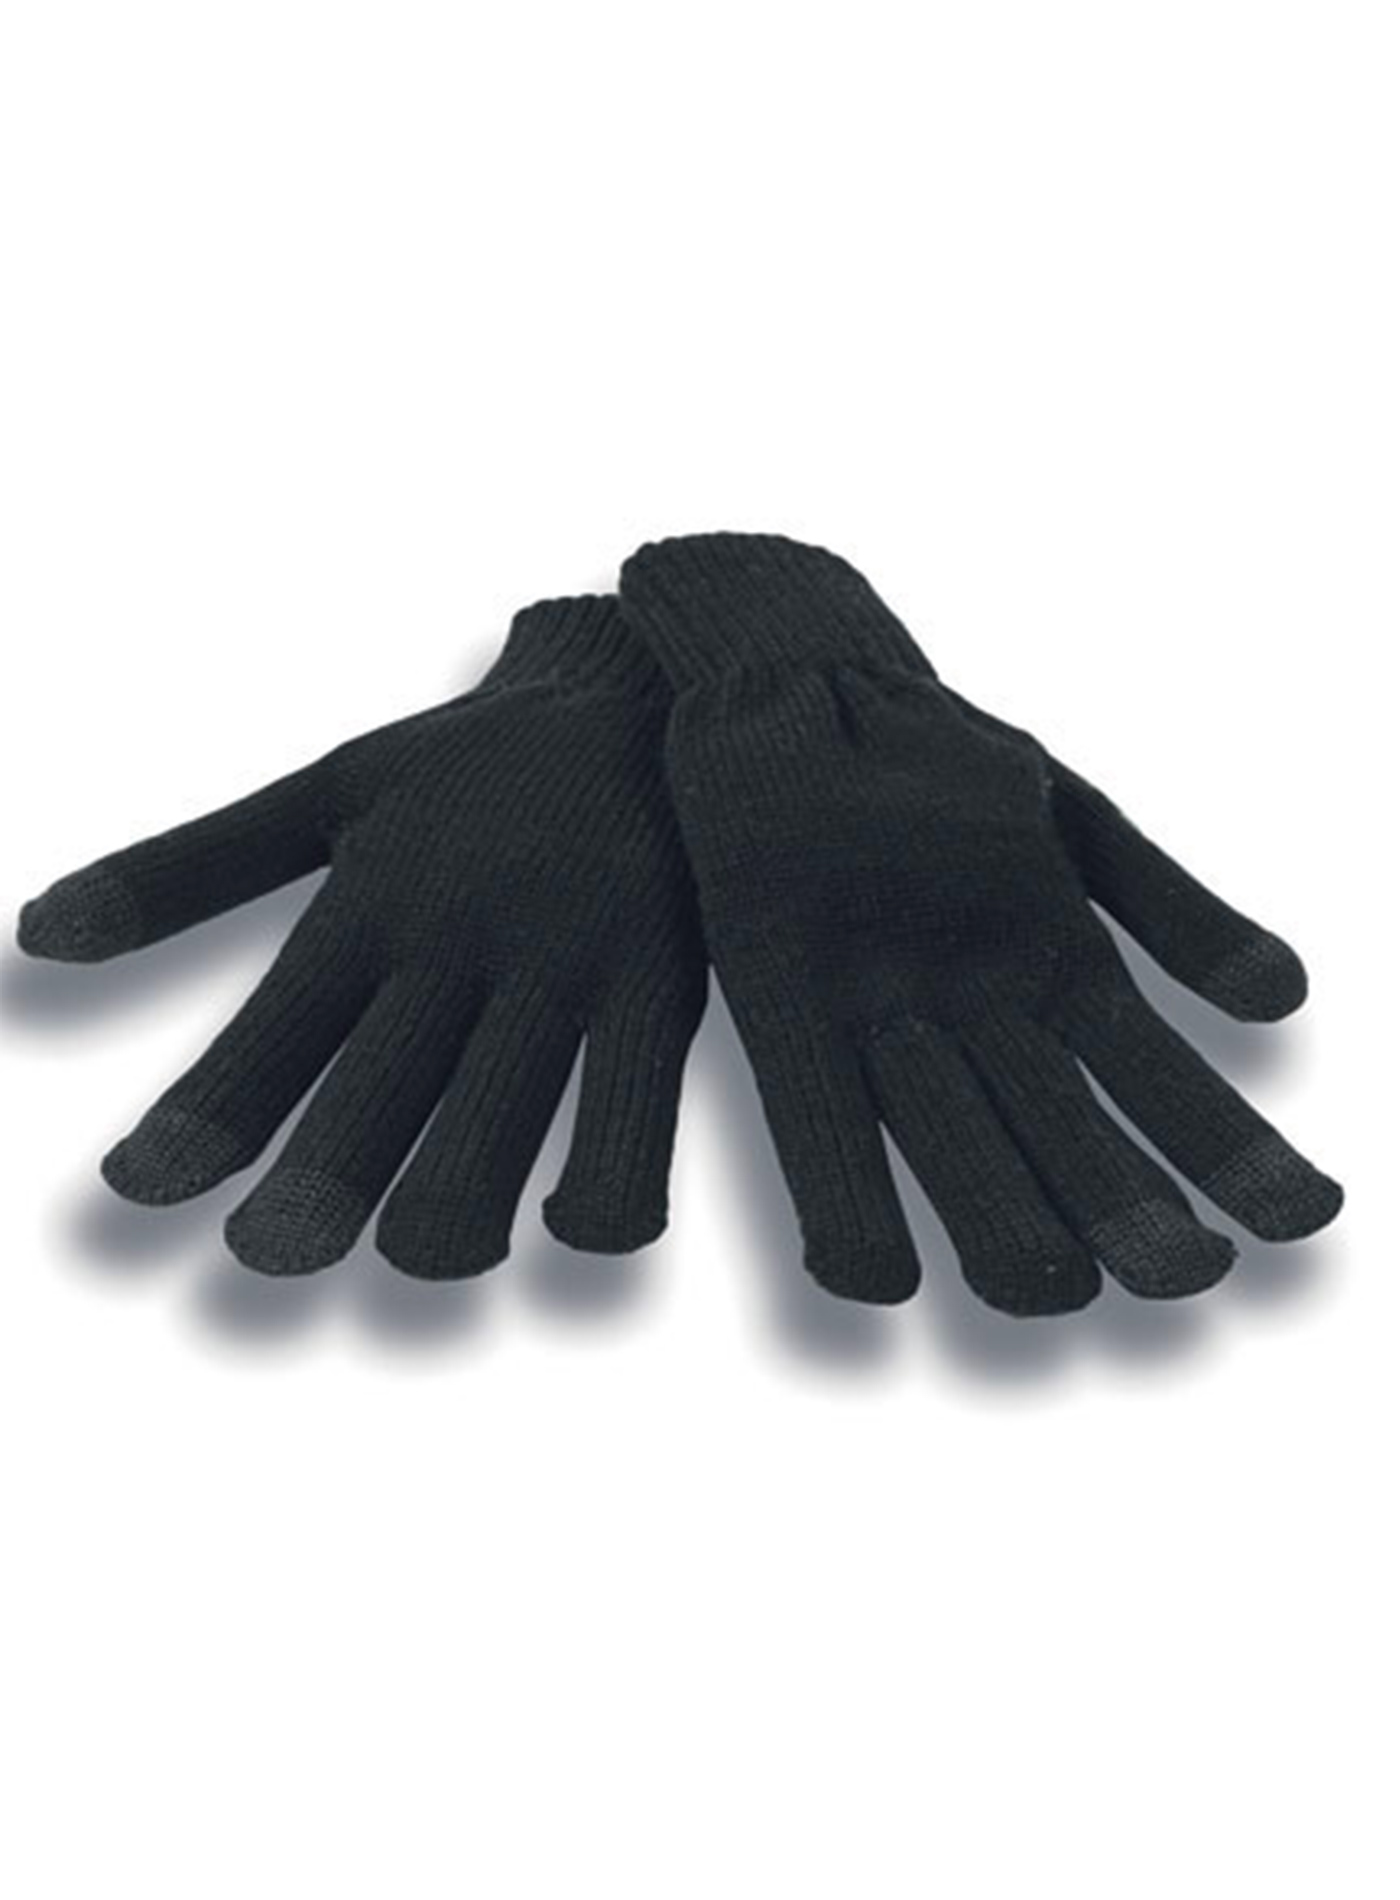 Unisex zimní dotykové rukavice Atlantis Touch - černá S/M